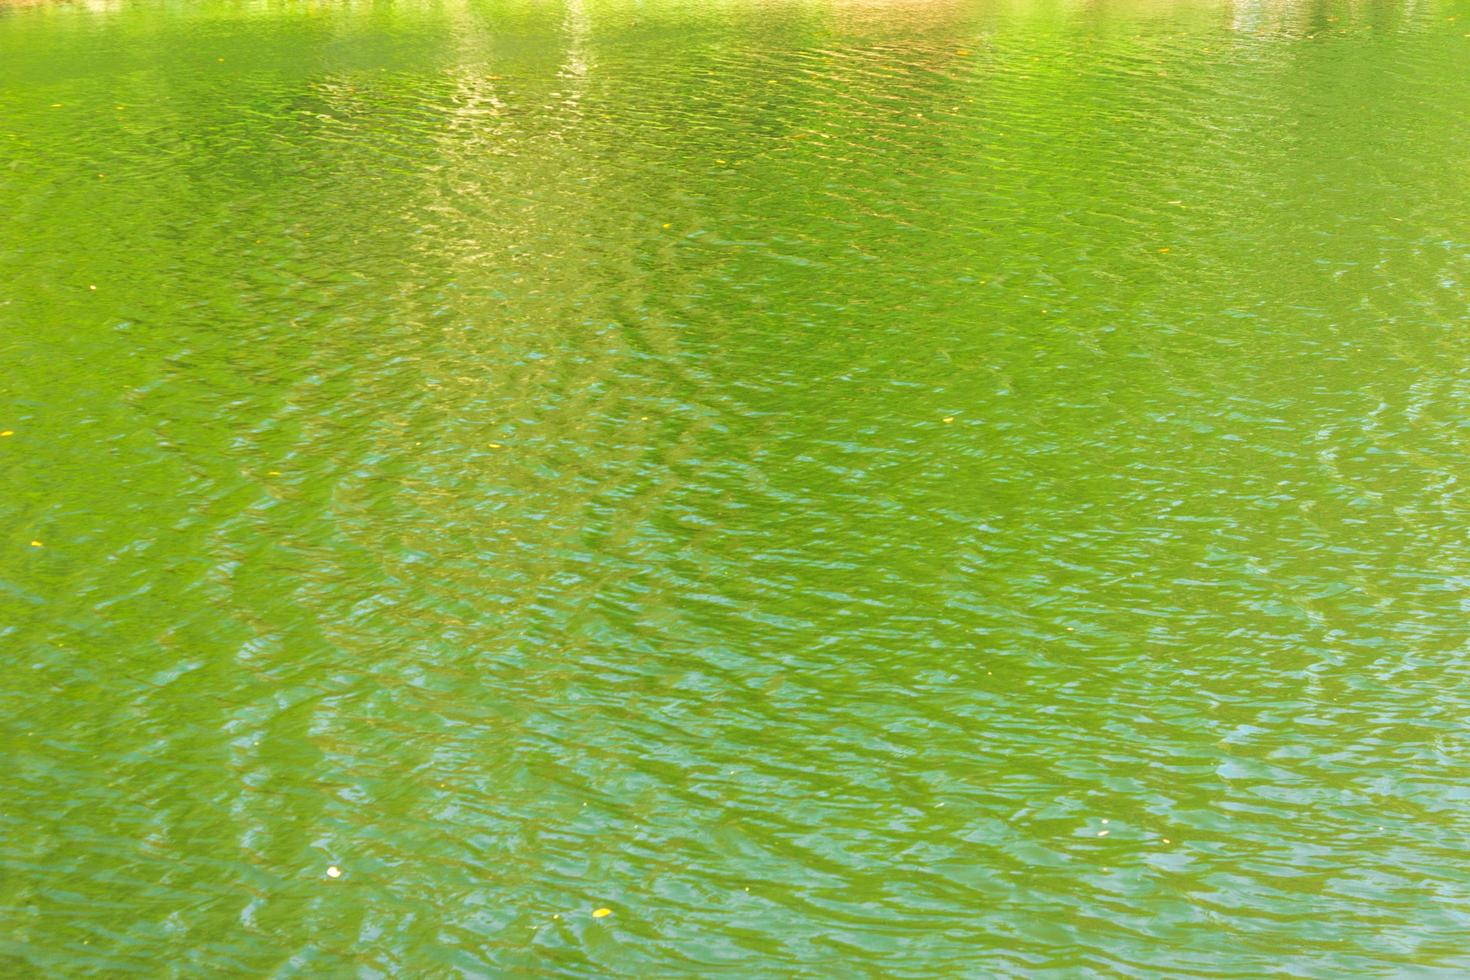 ondulations à la surface de l'eau verte photo